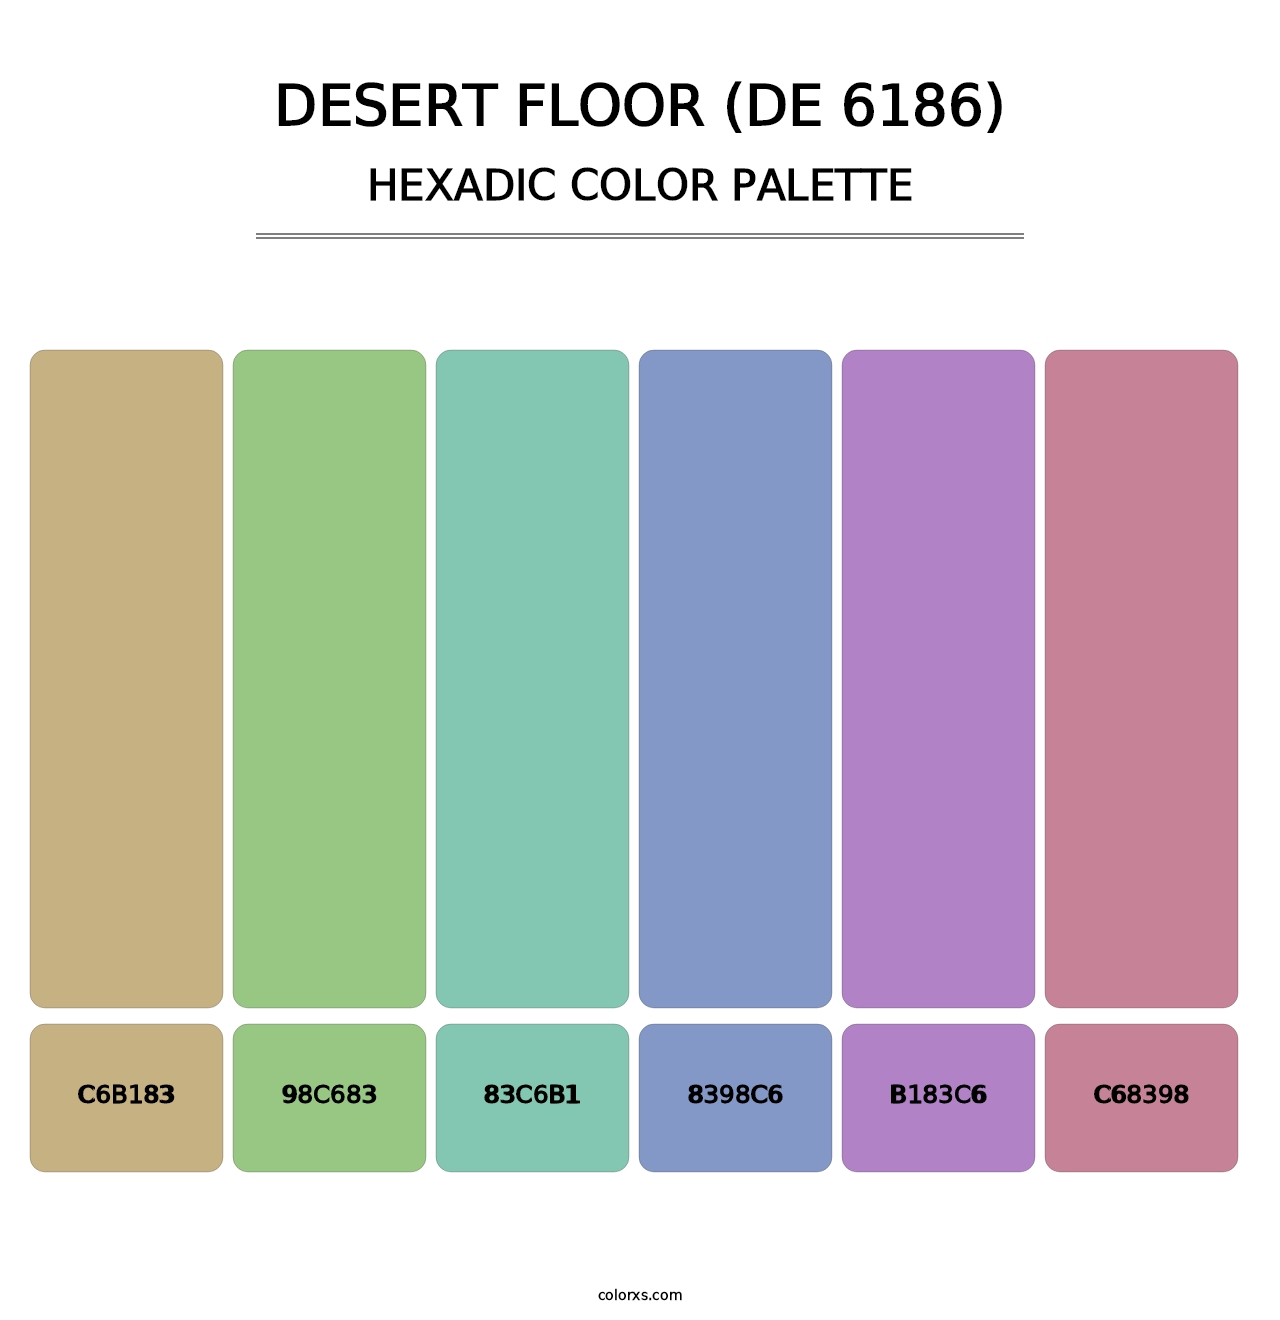 Desert Floor (DE 6186) - Hexadic Color Palette